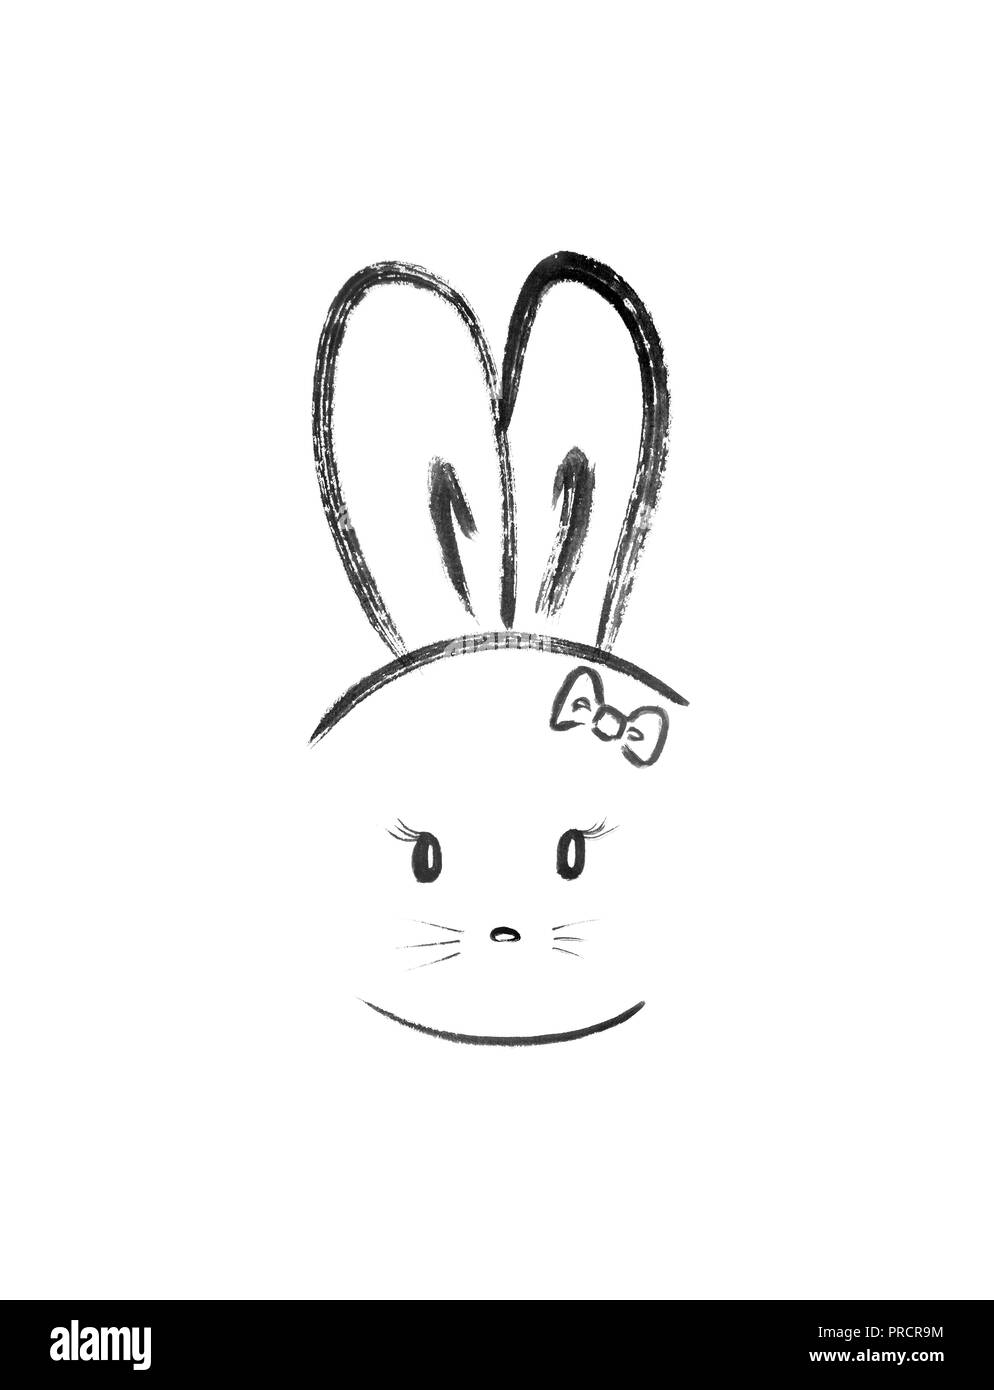 Cute Bunny chica con orejas largas que llevaba un arco. Ilustración estilo kawaii minimalista, el zen japonés Sumi-e ilustraciones aislado sobre fondo blanco. Foto de stock